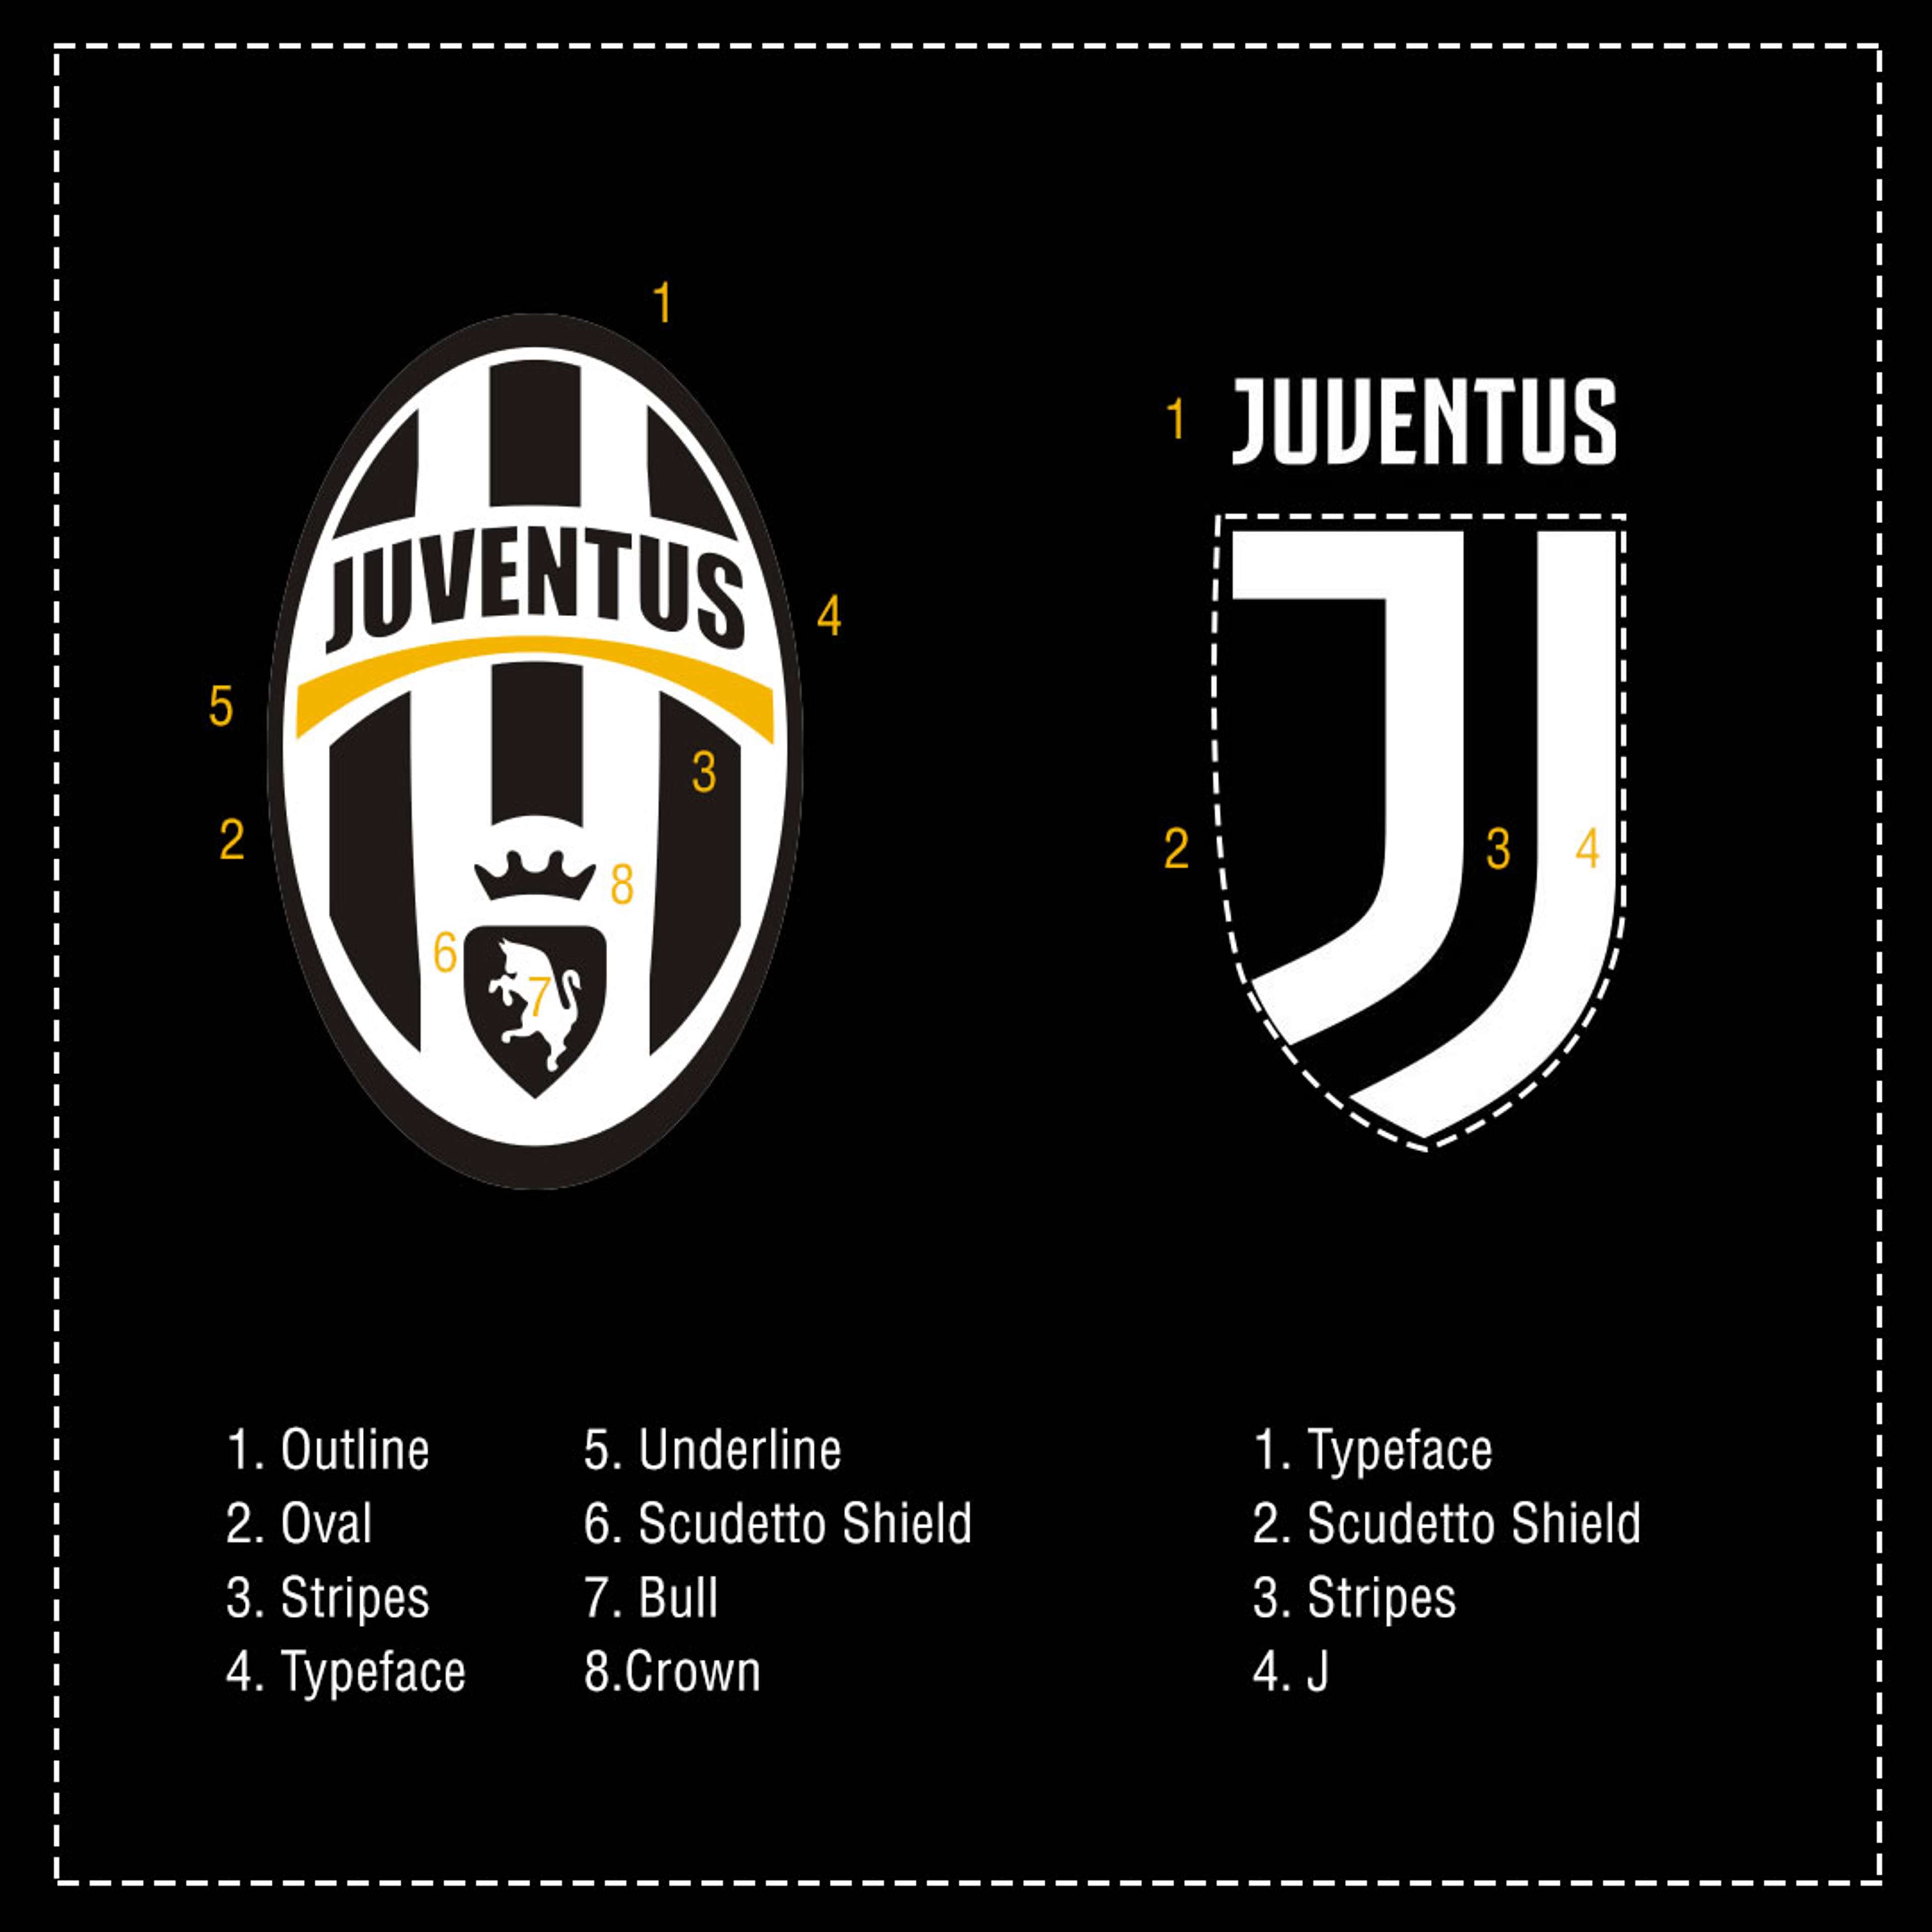 Juventus badge comparison